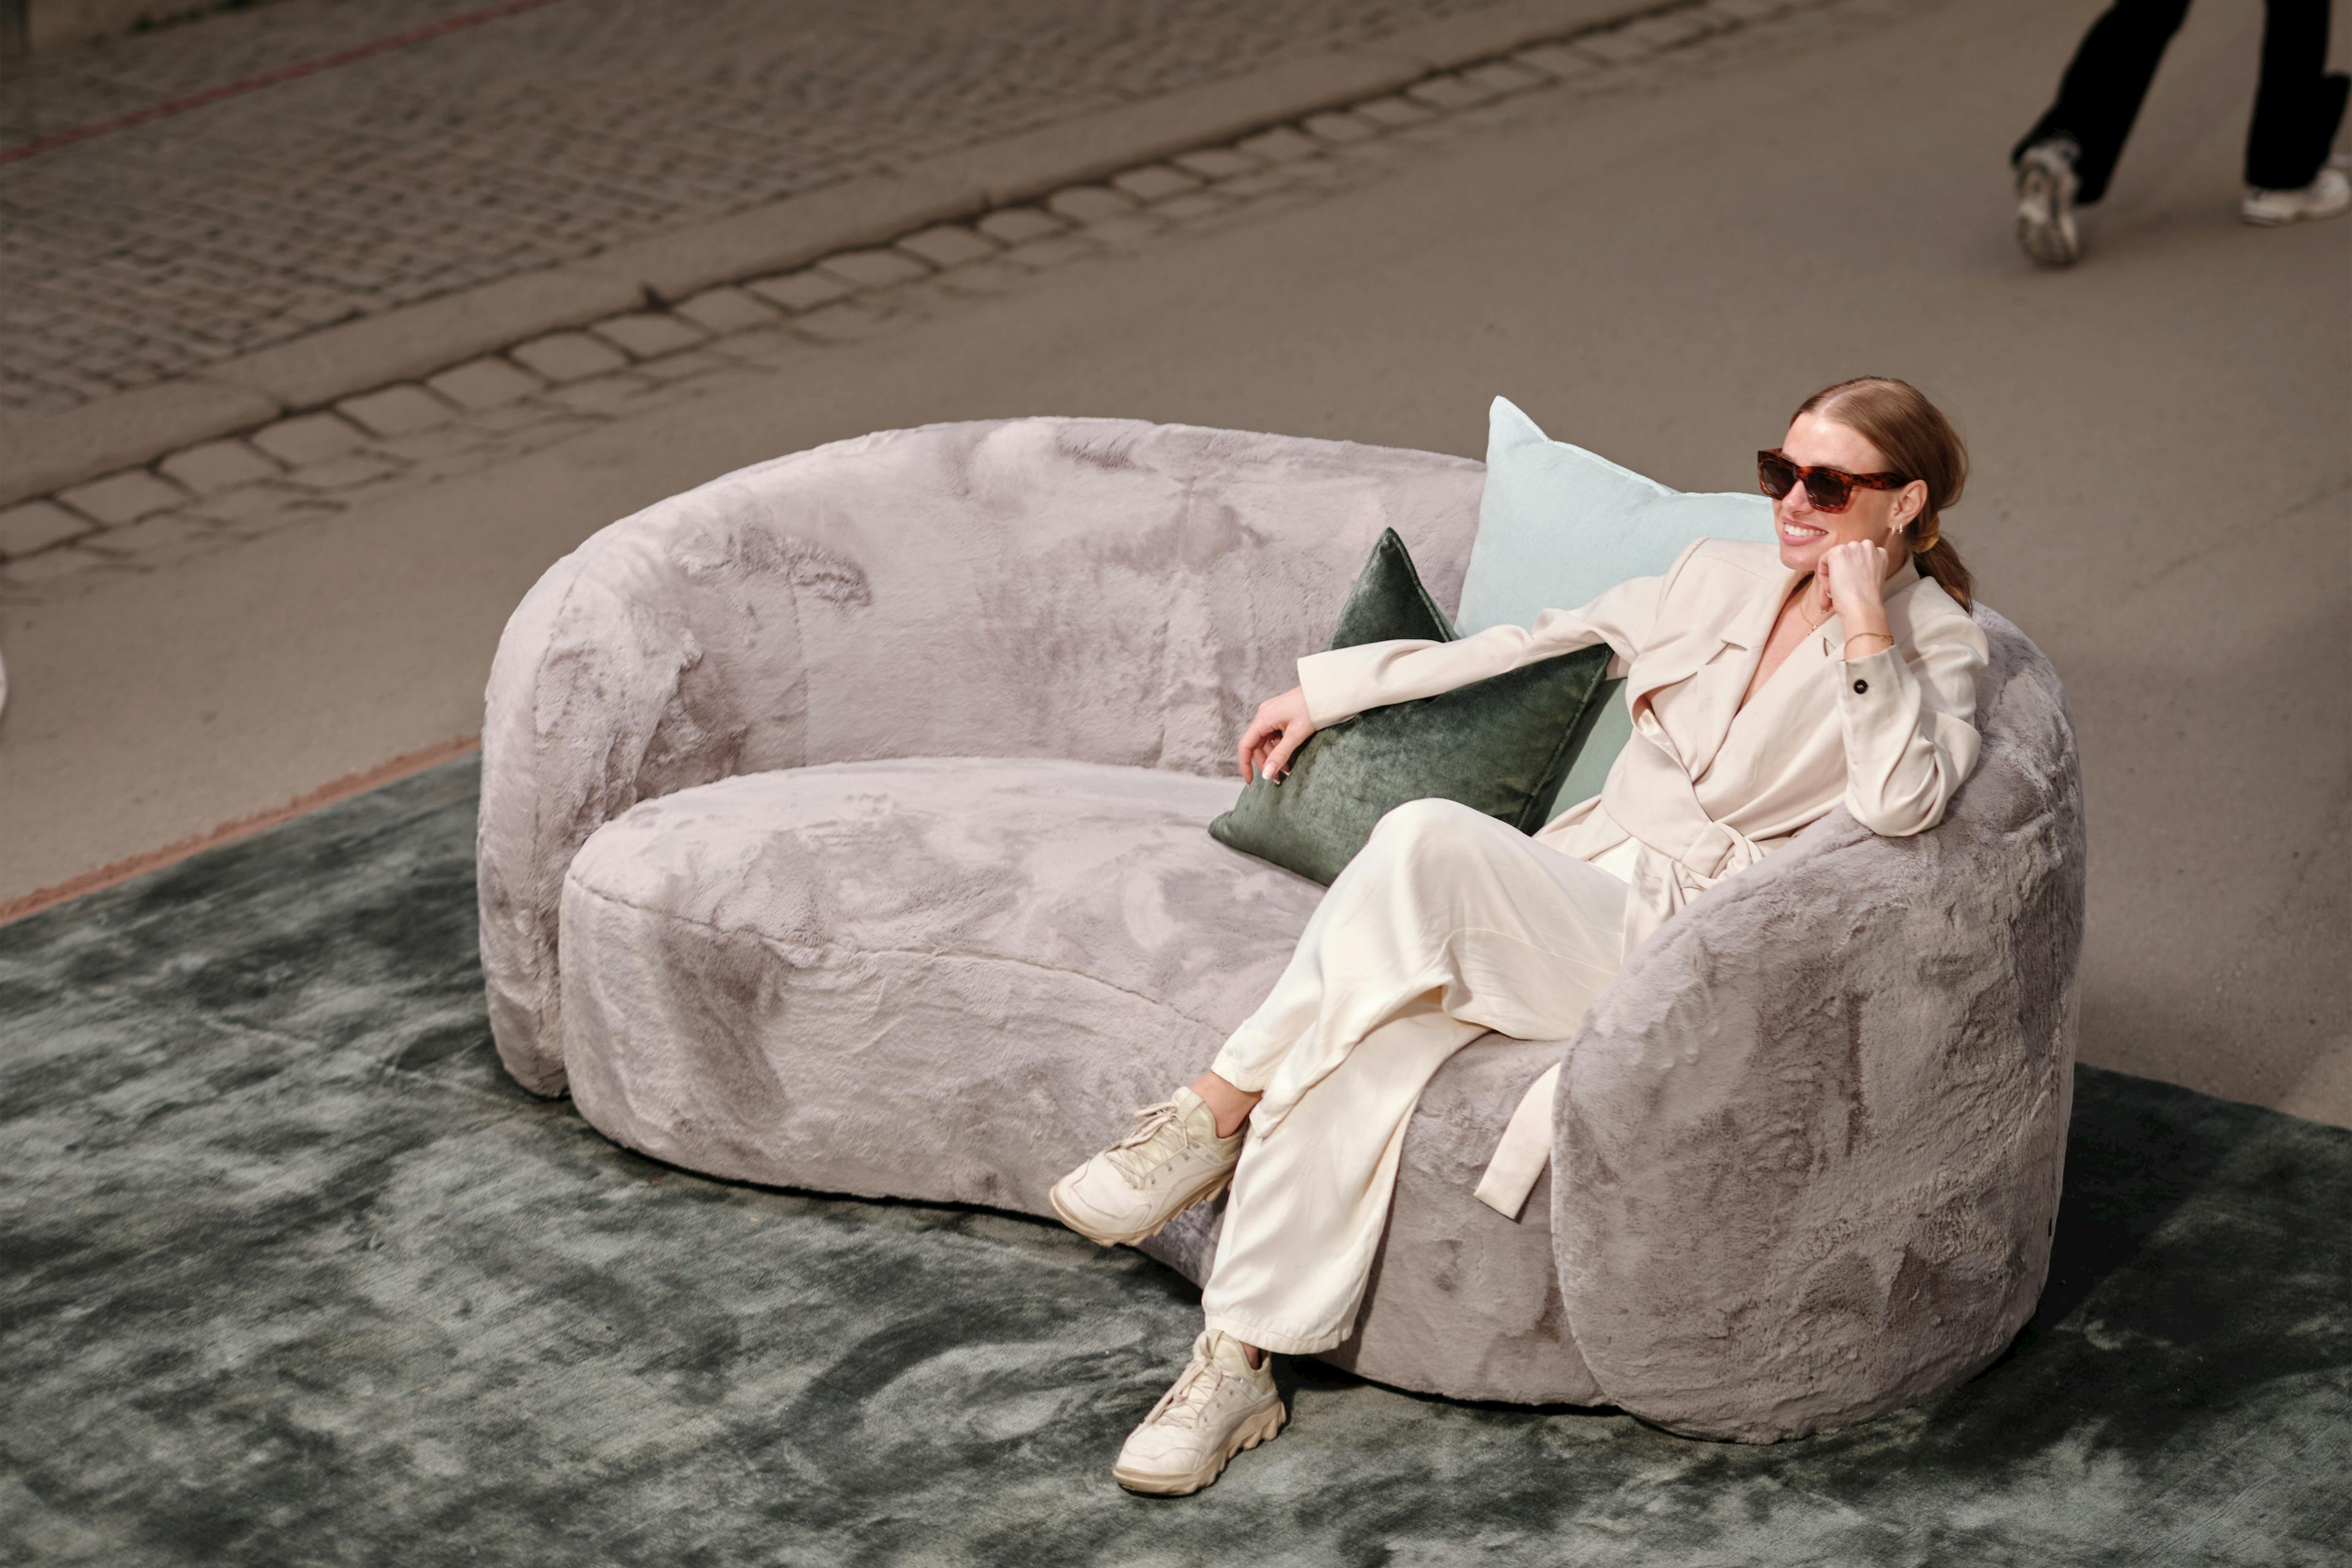 Dunfri soffa, 200cm bred, i grått fluffigt polyestertyg med rundad sits och rundad rygg. 